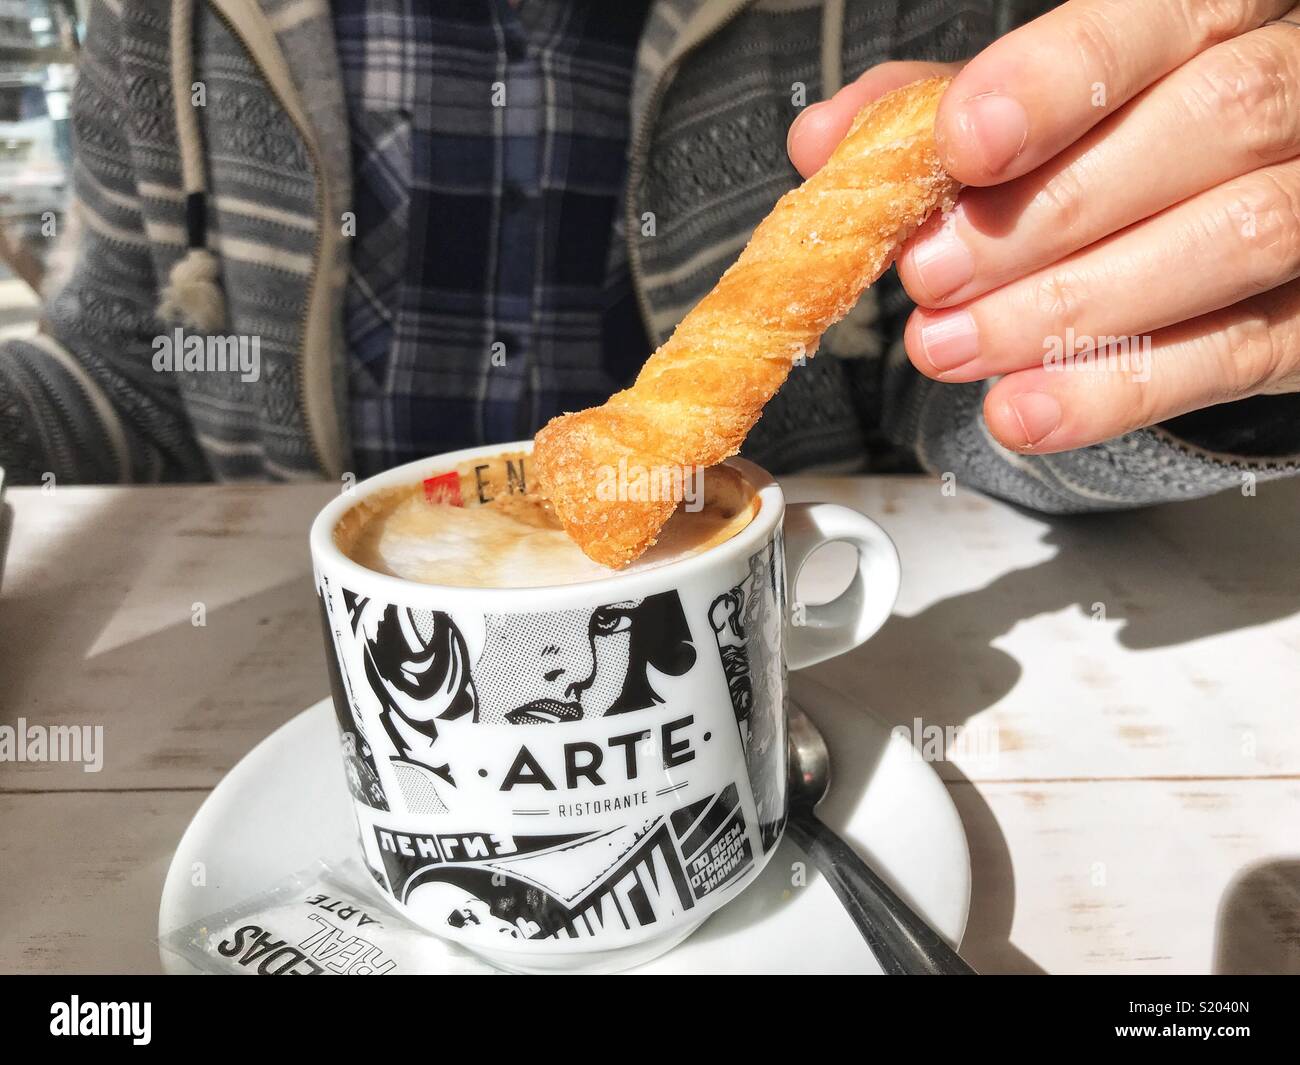 Femme un biscuit tremper dans une tasse de cappuccino dans un café, midsection view Banque D'Images